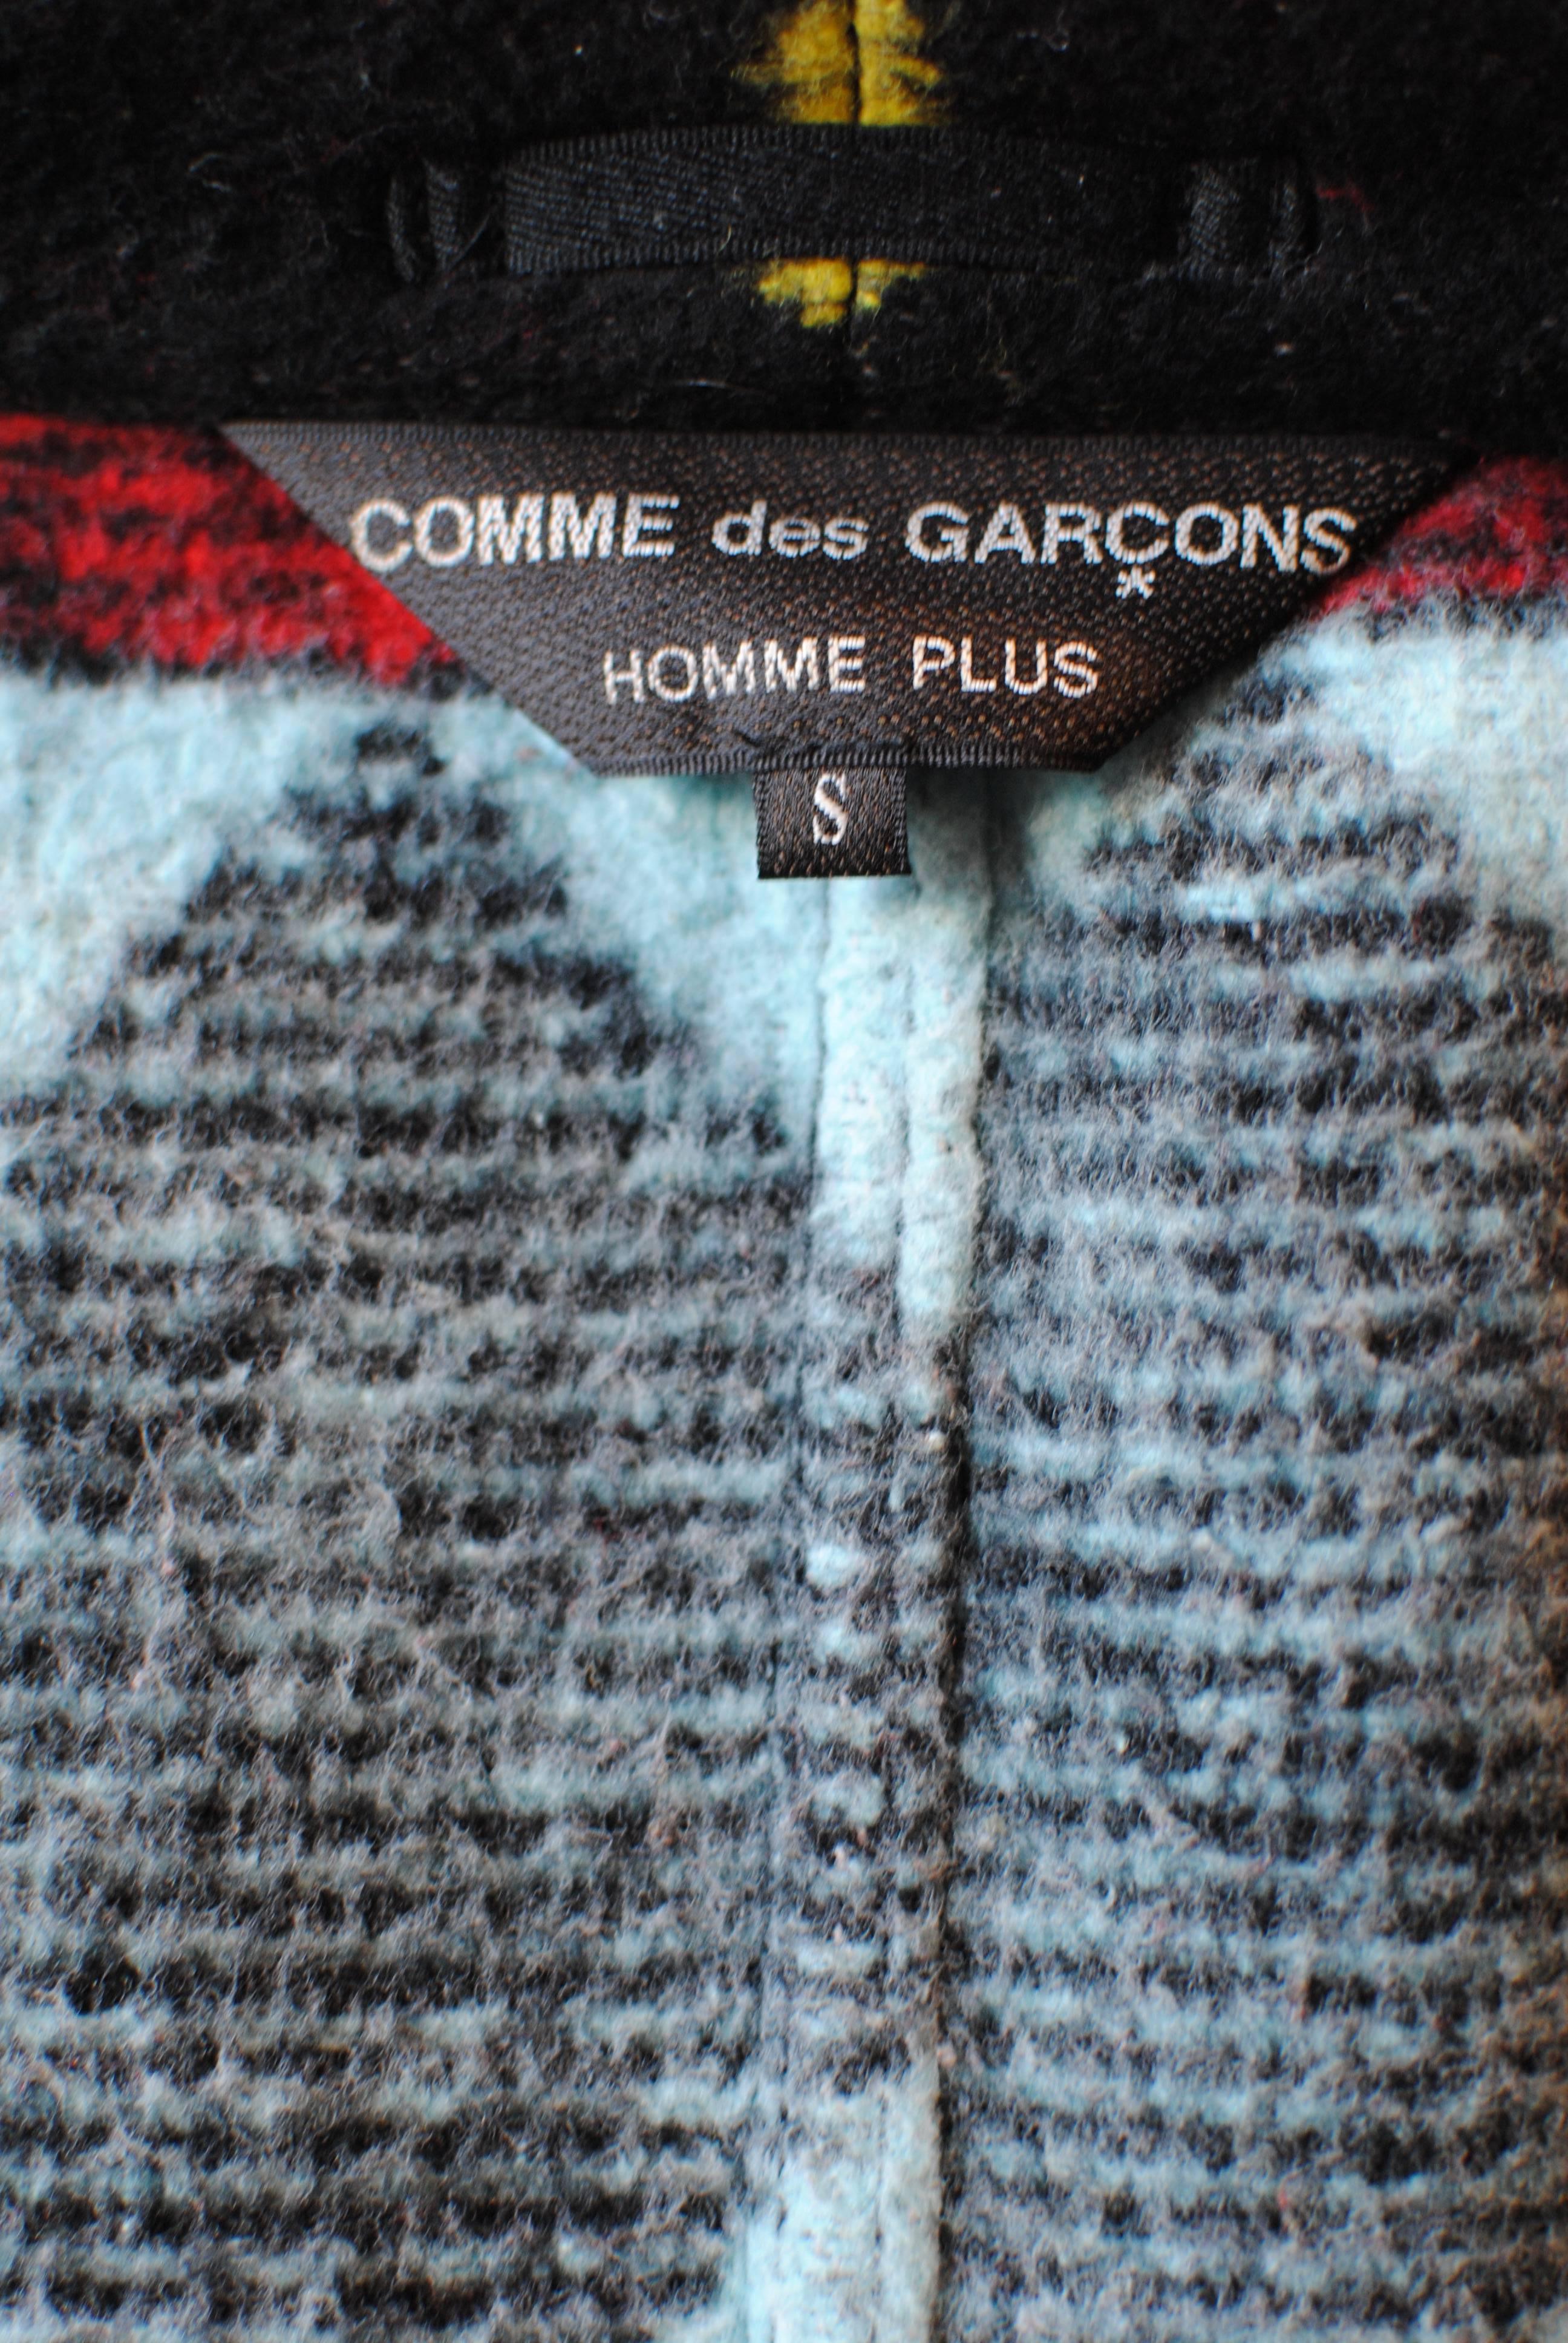 2004 COMME des GARÇONS Homme Plus tribal print blanket suit For Sale 1